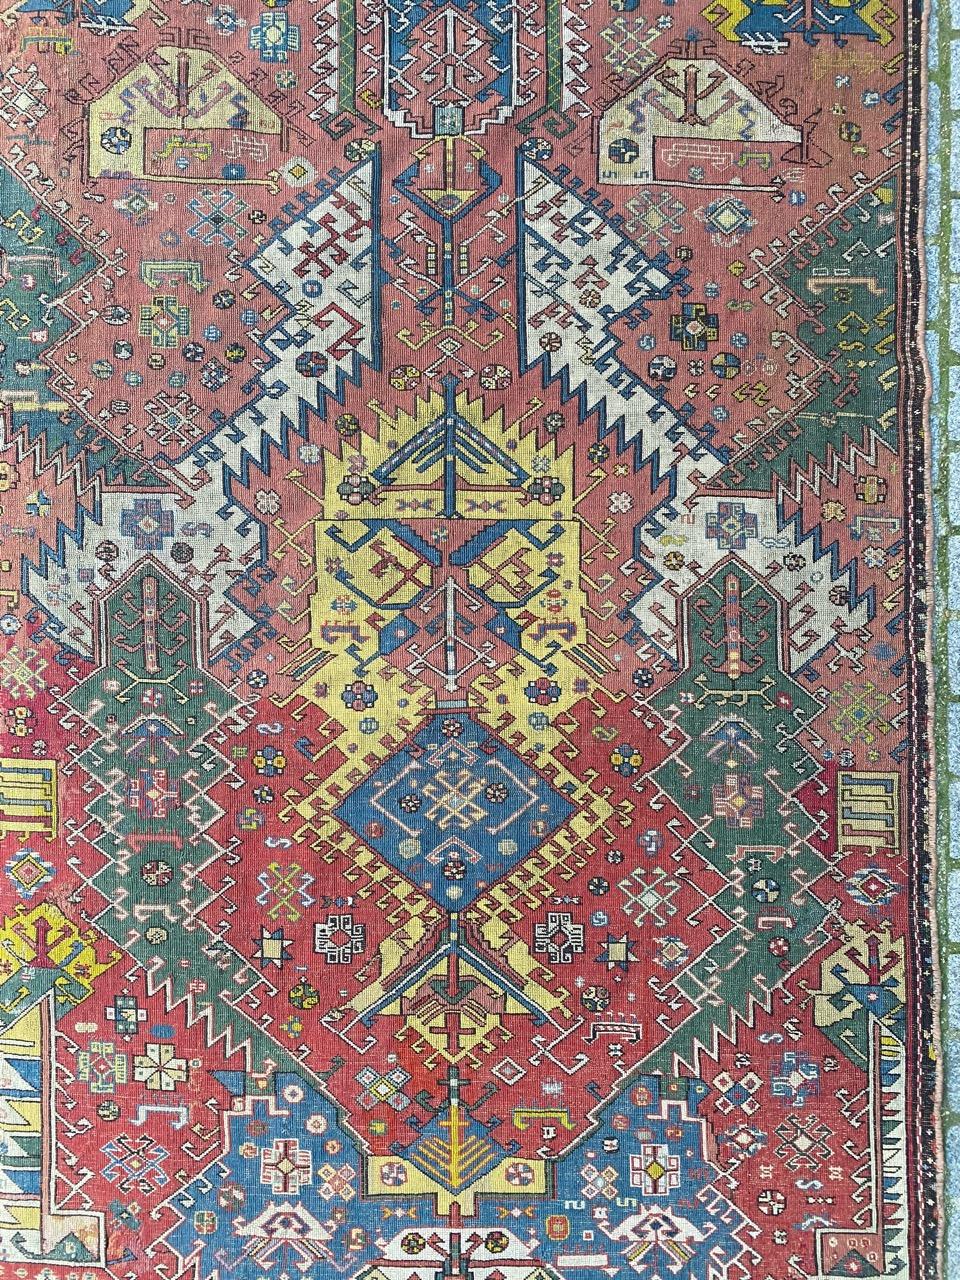 Très beau tapis caucasien de collection à motif d'aigle, avec un joli dessin inhabituel et des couleurs naturelles, entièrement brodé à la main à l'aiguille avec de la laine.

✨✨✨
